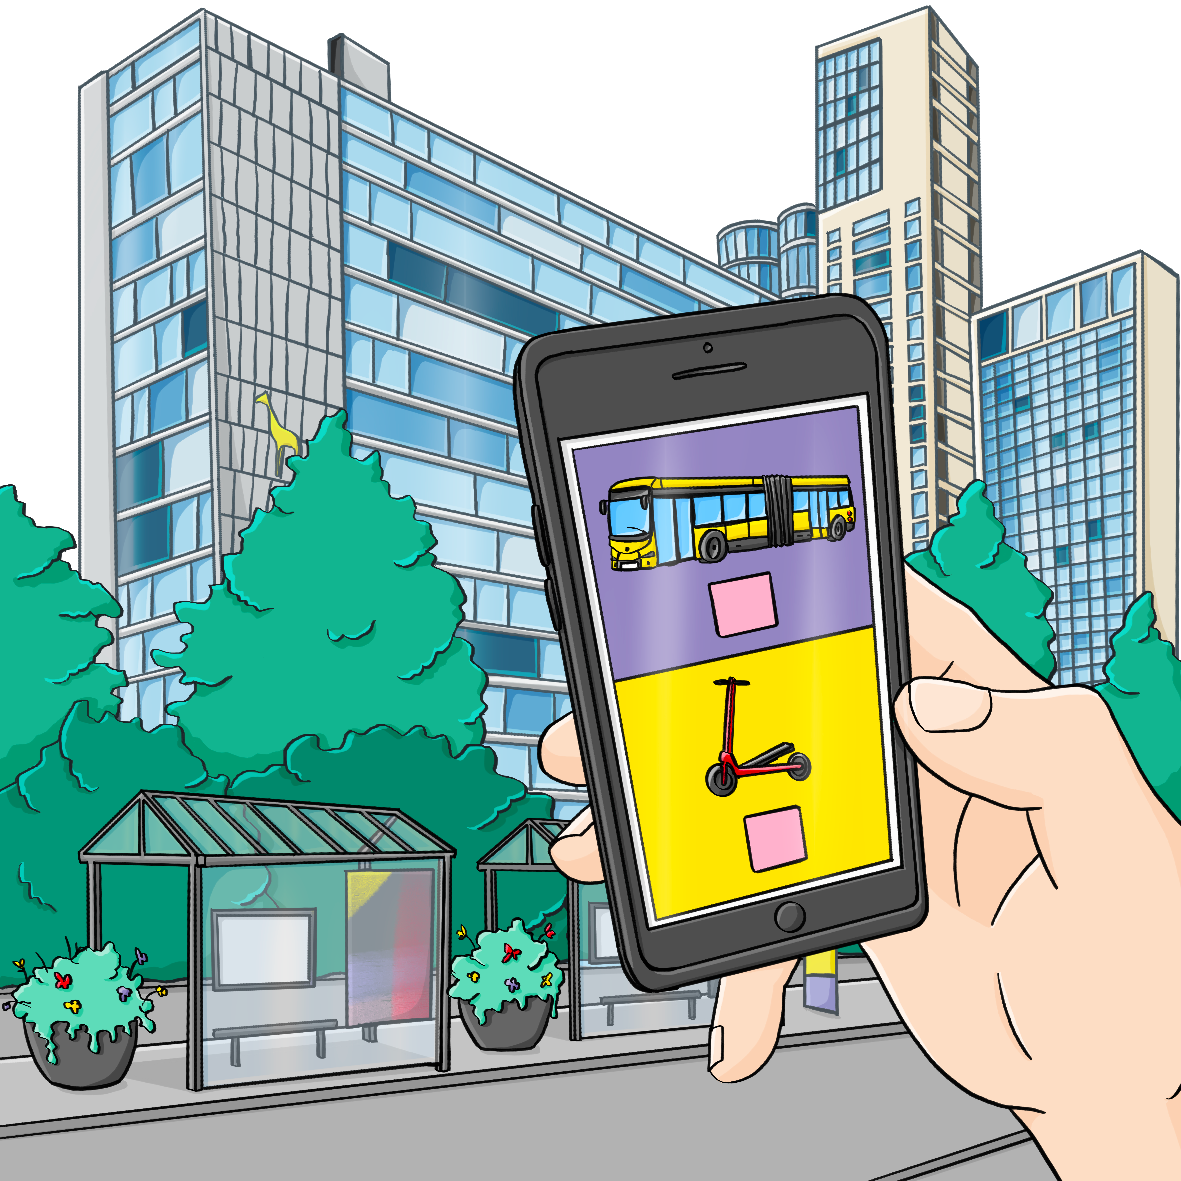 Ein begrünter Platz mit Bushaltestellen, im Hintergrund sind Hochhäuser. Im Vordergrund hält eine Hand ein Smartphone. Auf dem Display ist ein Bus und ein E-Roller.